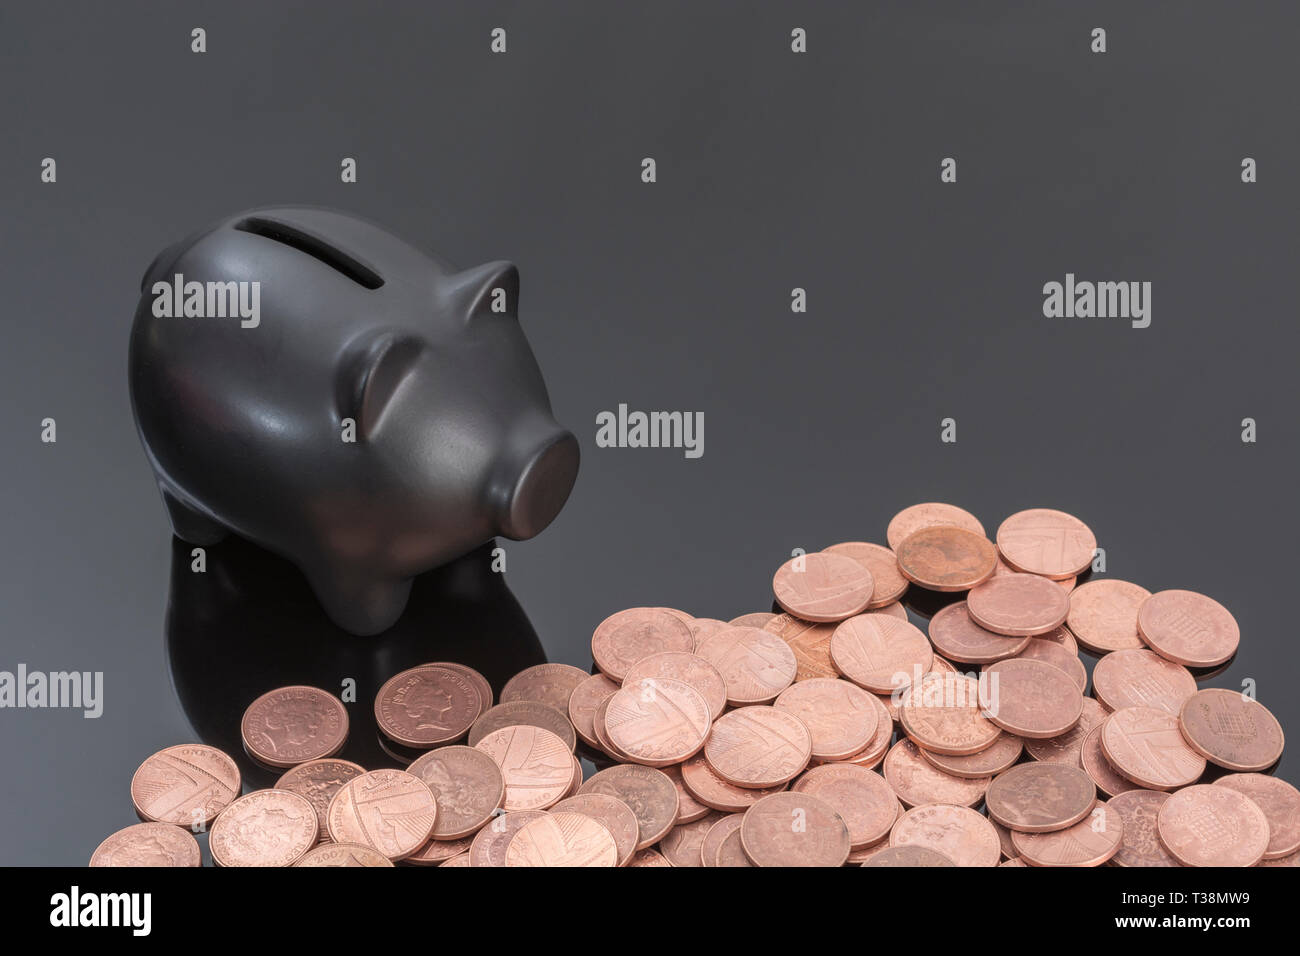 Schwarzer Keramik Sparschwein mit britischen Münzen auf reflektierenden schwarzen Hintergrund. Metapher für Geld sparen, sparen, sparen Pennies, Britische Pennies. Stockfoto